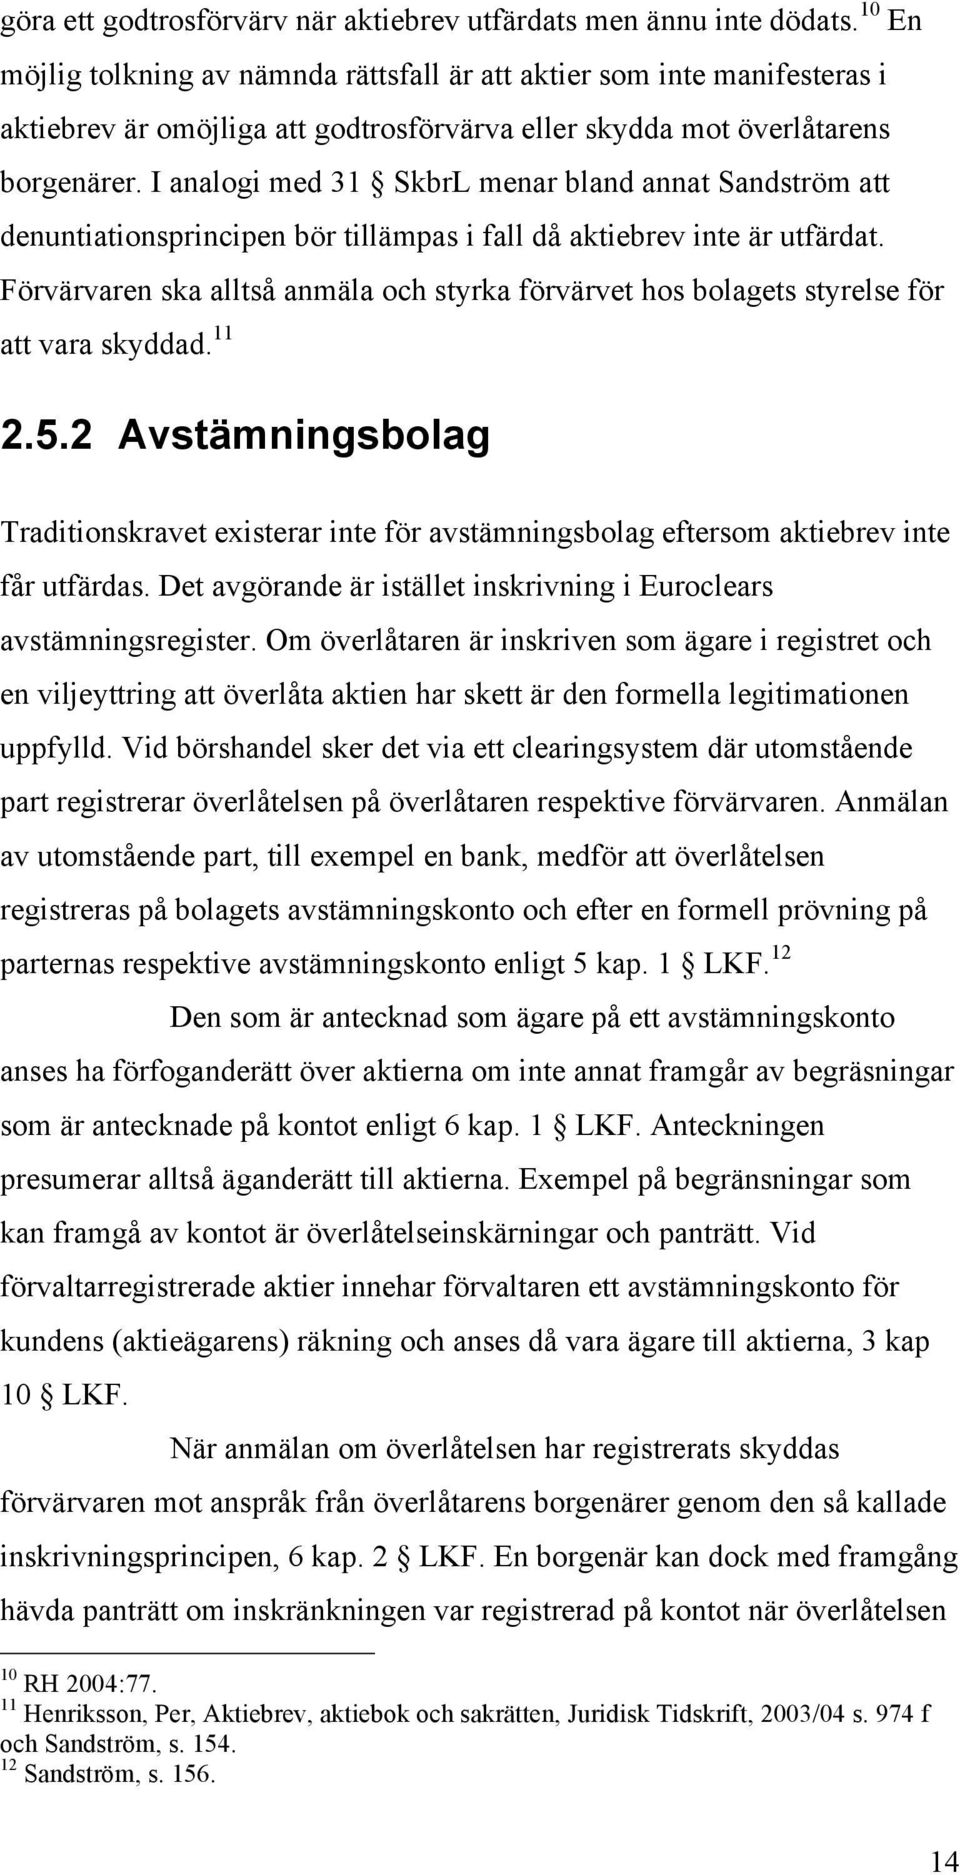 I analogi med 31 SkbrL menar bland annat Sandström att denuntiationsprincipen bör tillämpas i fall då aktiebrev inte är utfärdat.